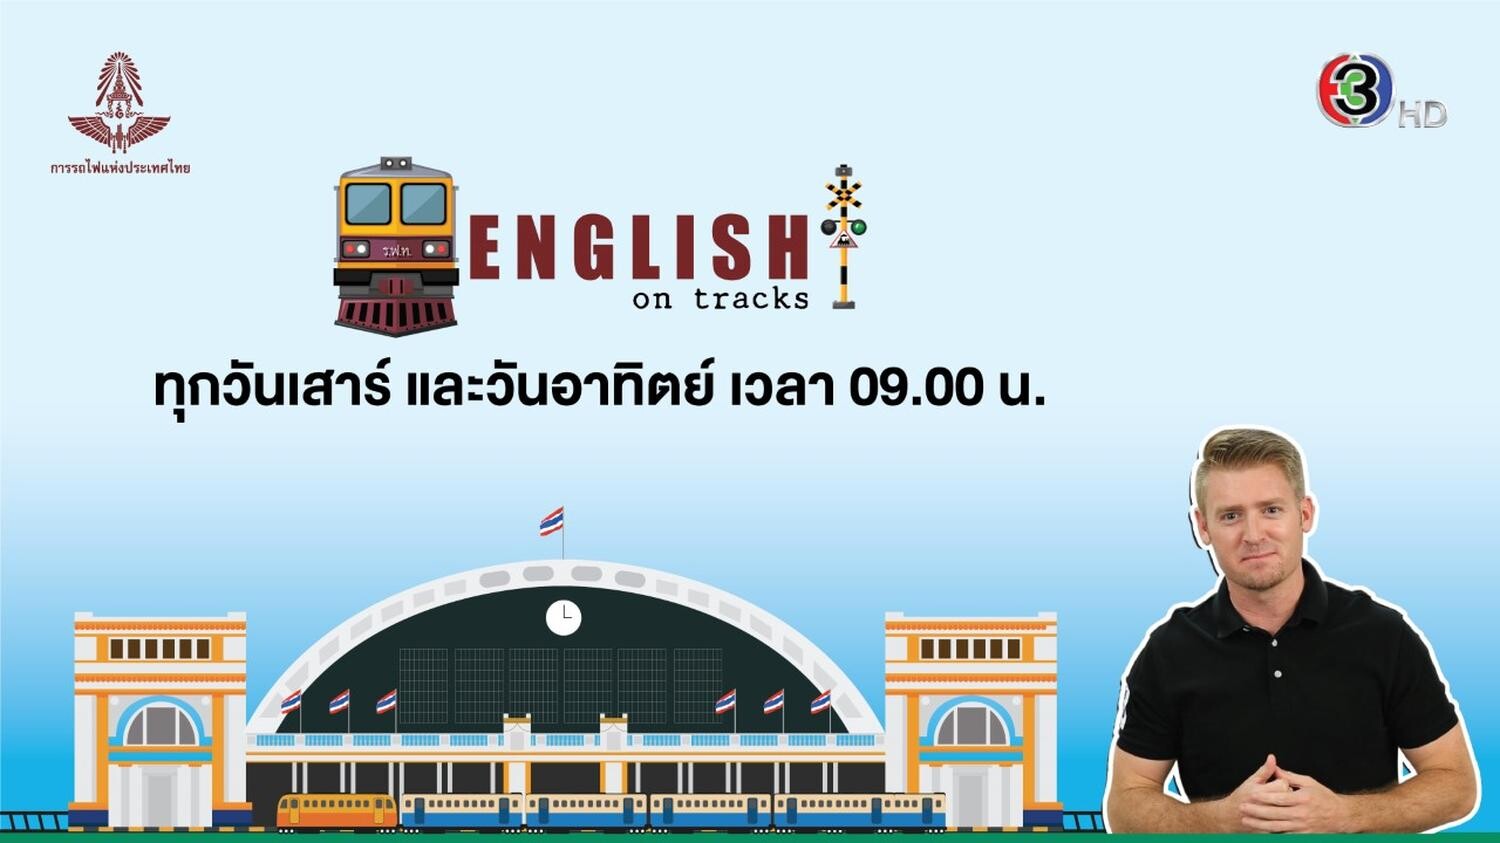 ช่อง 3 ส่ง “English on Tracks” รายการใหม่โชว์ความรู้เรื่องรถไฟไทย !! พร้อมควบคู่คำศัพท์ และประโยคภาษาอังกฤษที่น่าสนใจตลอดกันยายนนี้